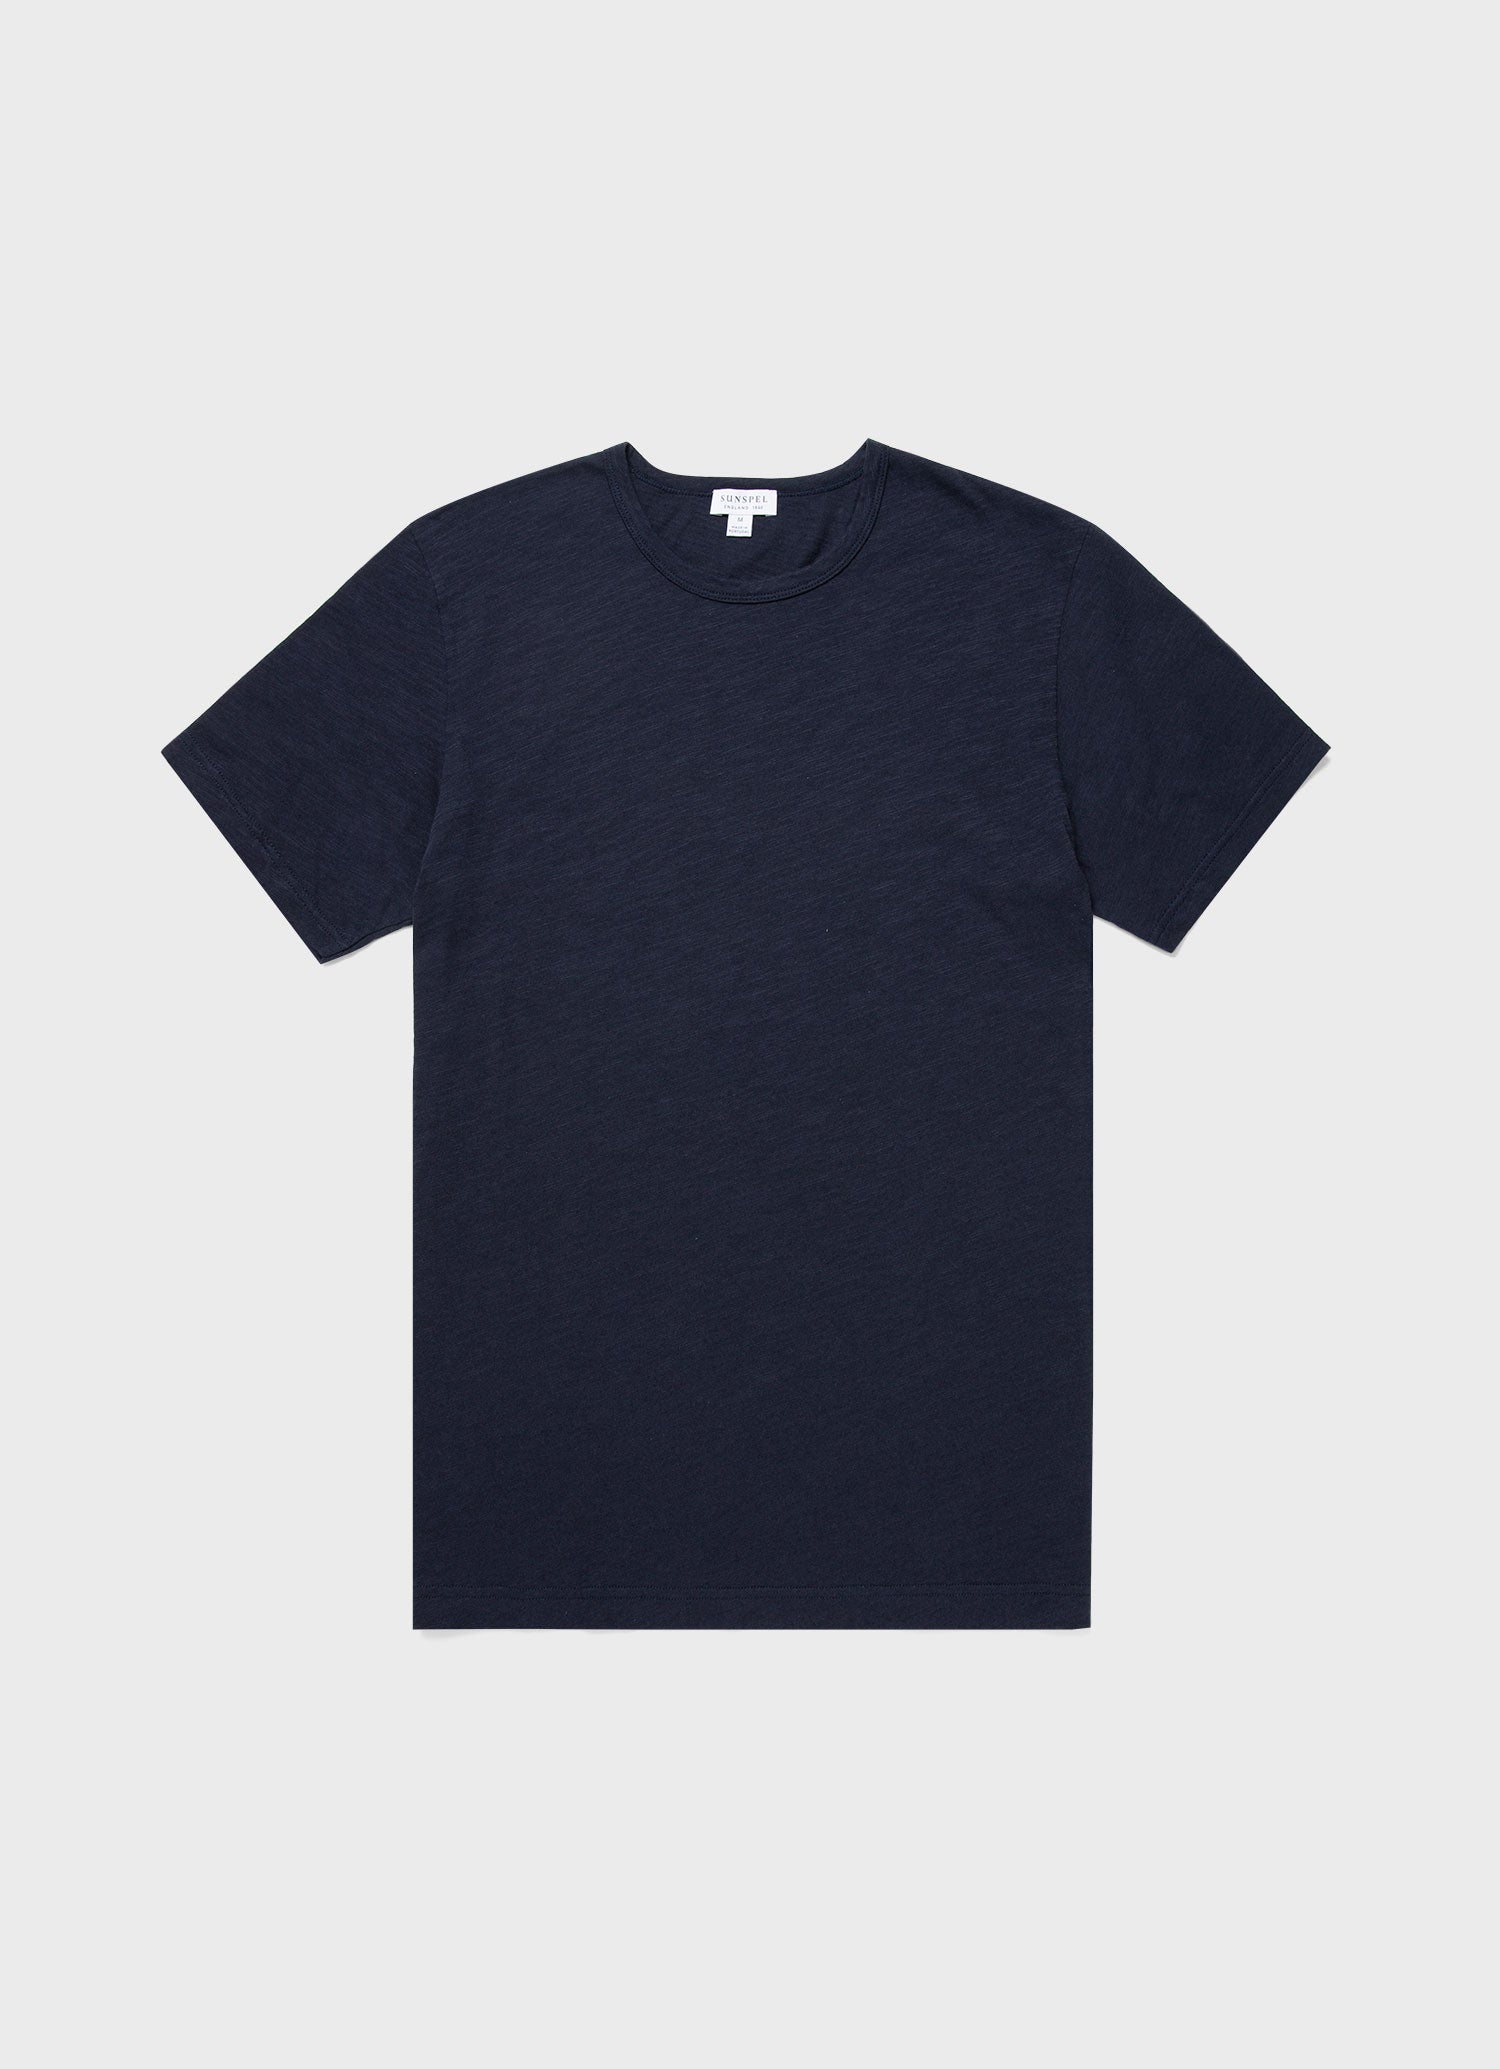 Men's Cotton Linen T-shirt in Navy